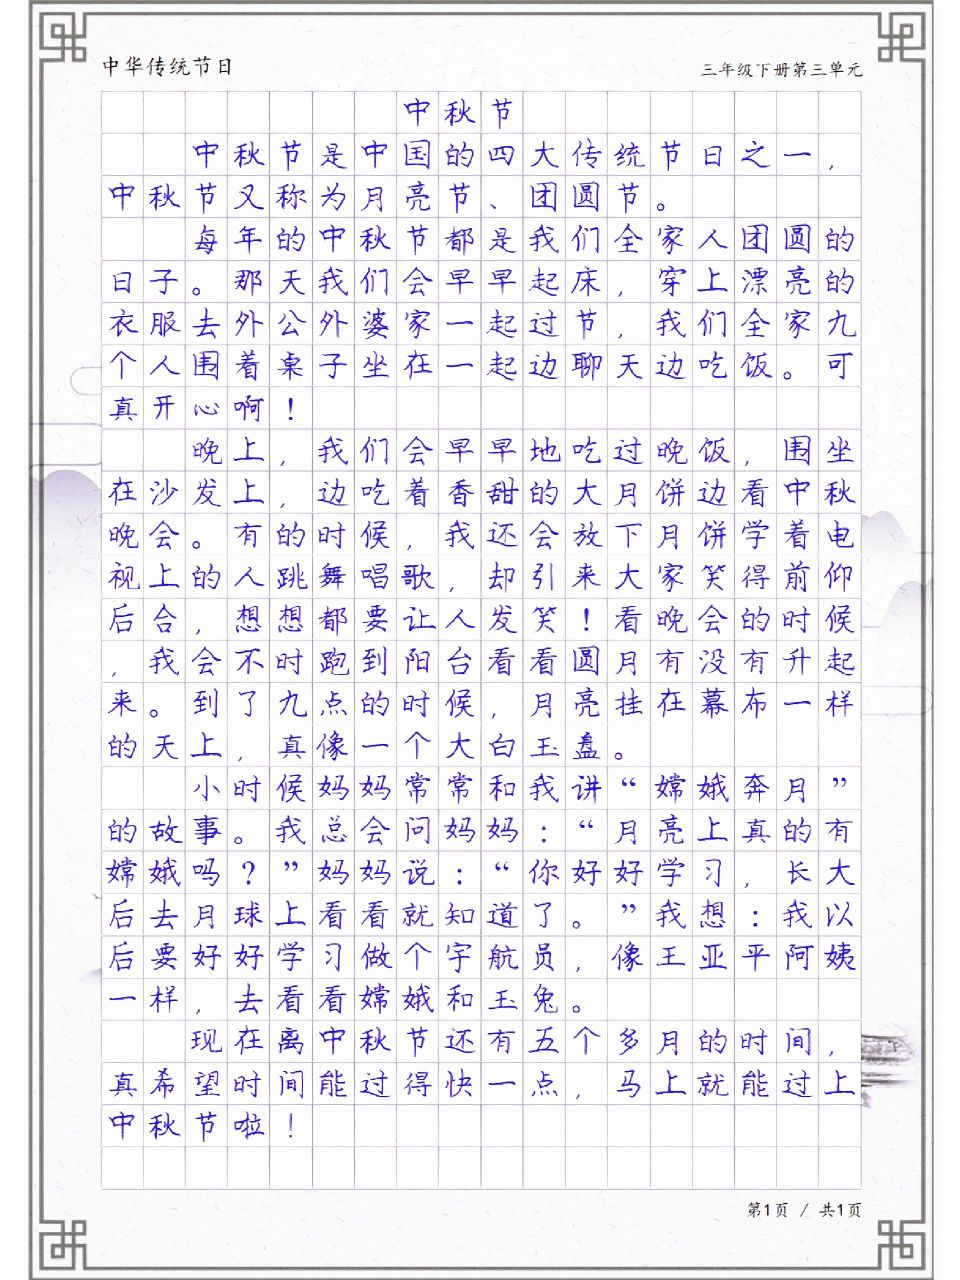 三年级作文《中秋节》,中华传统节日习作